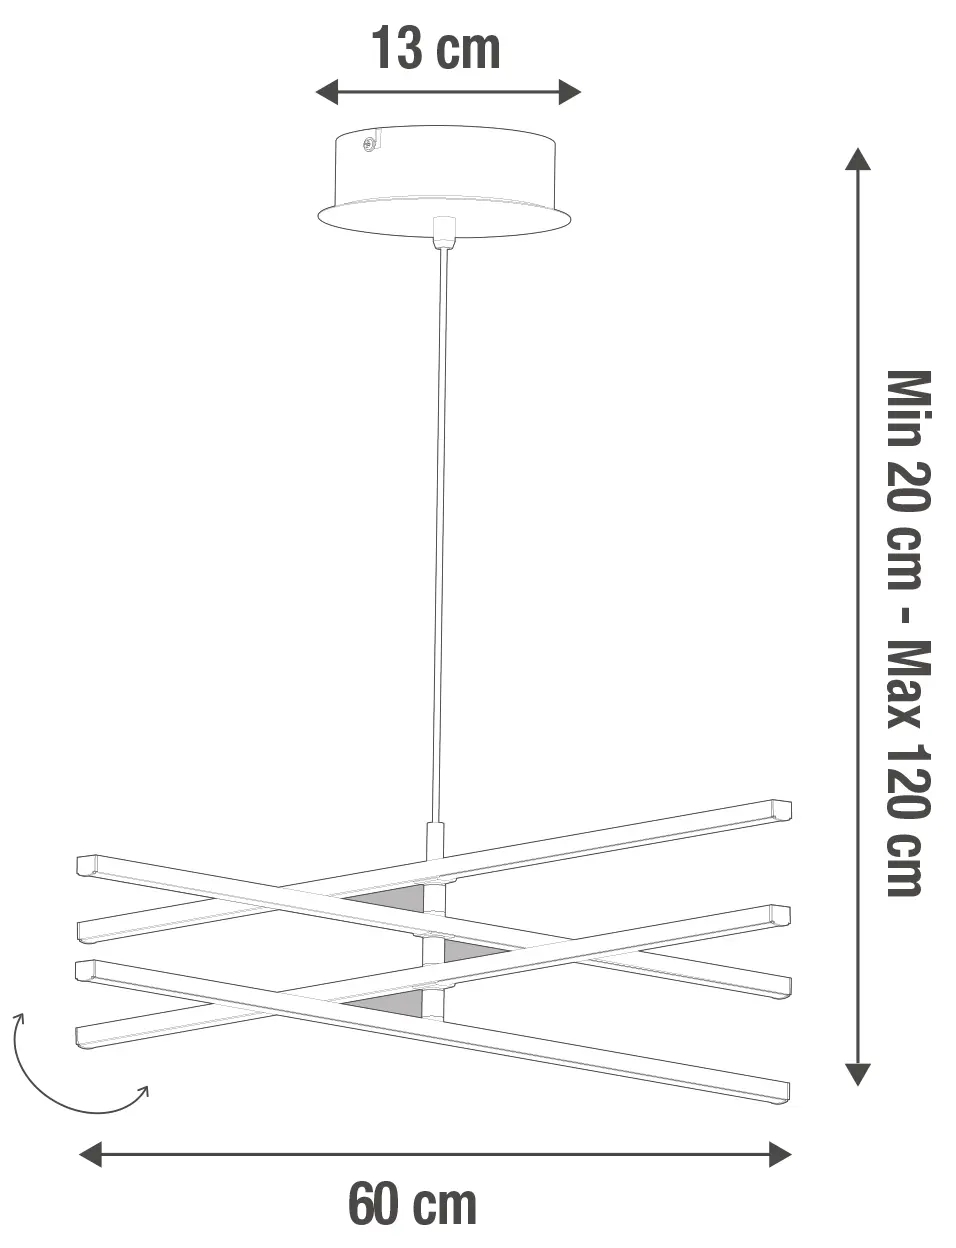 Lampadario Moderno Concord cromo, in metallo, D. 60 cm, L. 60 cm, 4 luci, INSPIRE - 2